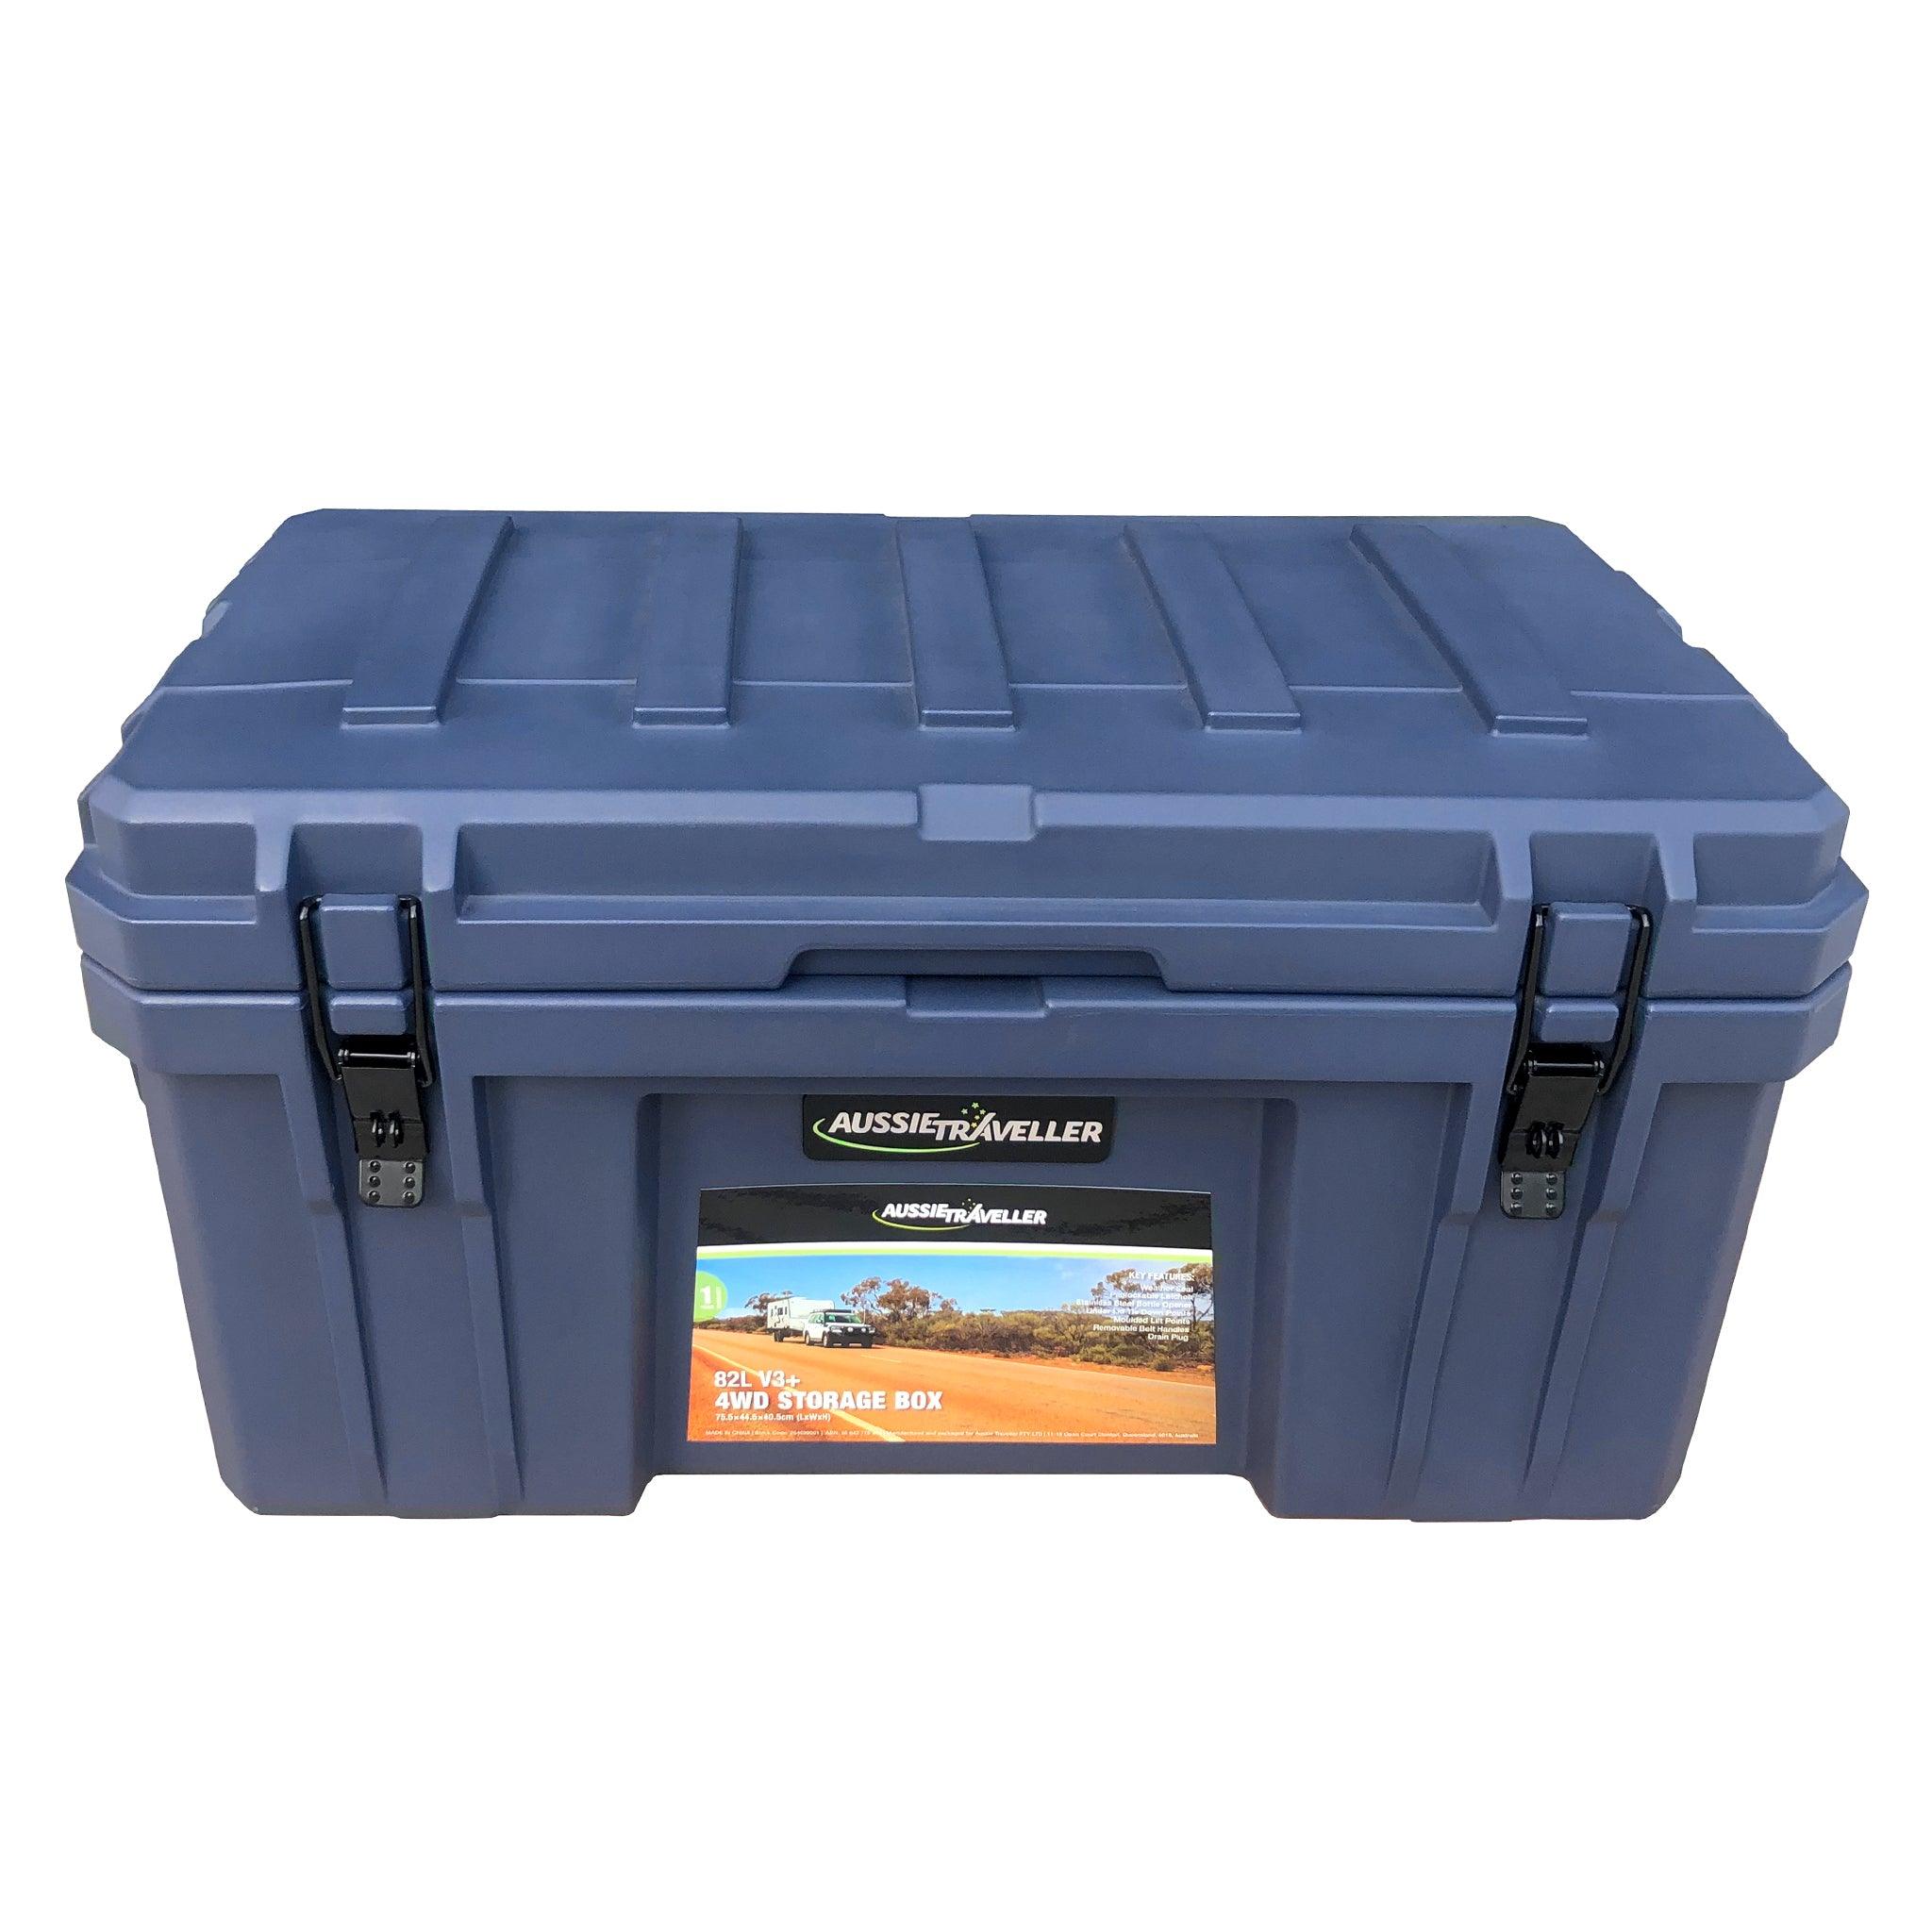 4WD Storage Box V3+ 82L - Aussie Traveller